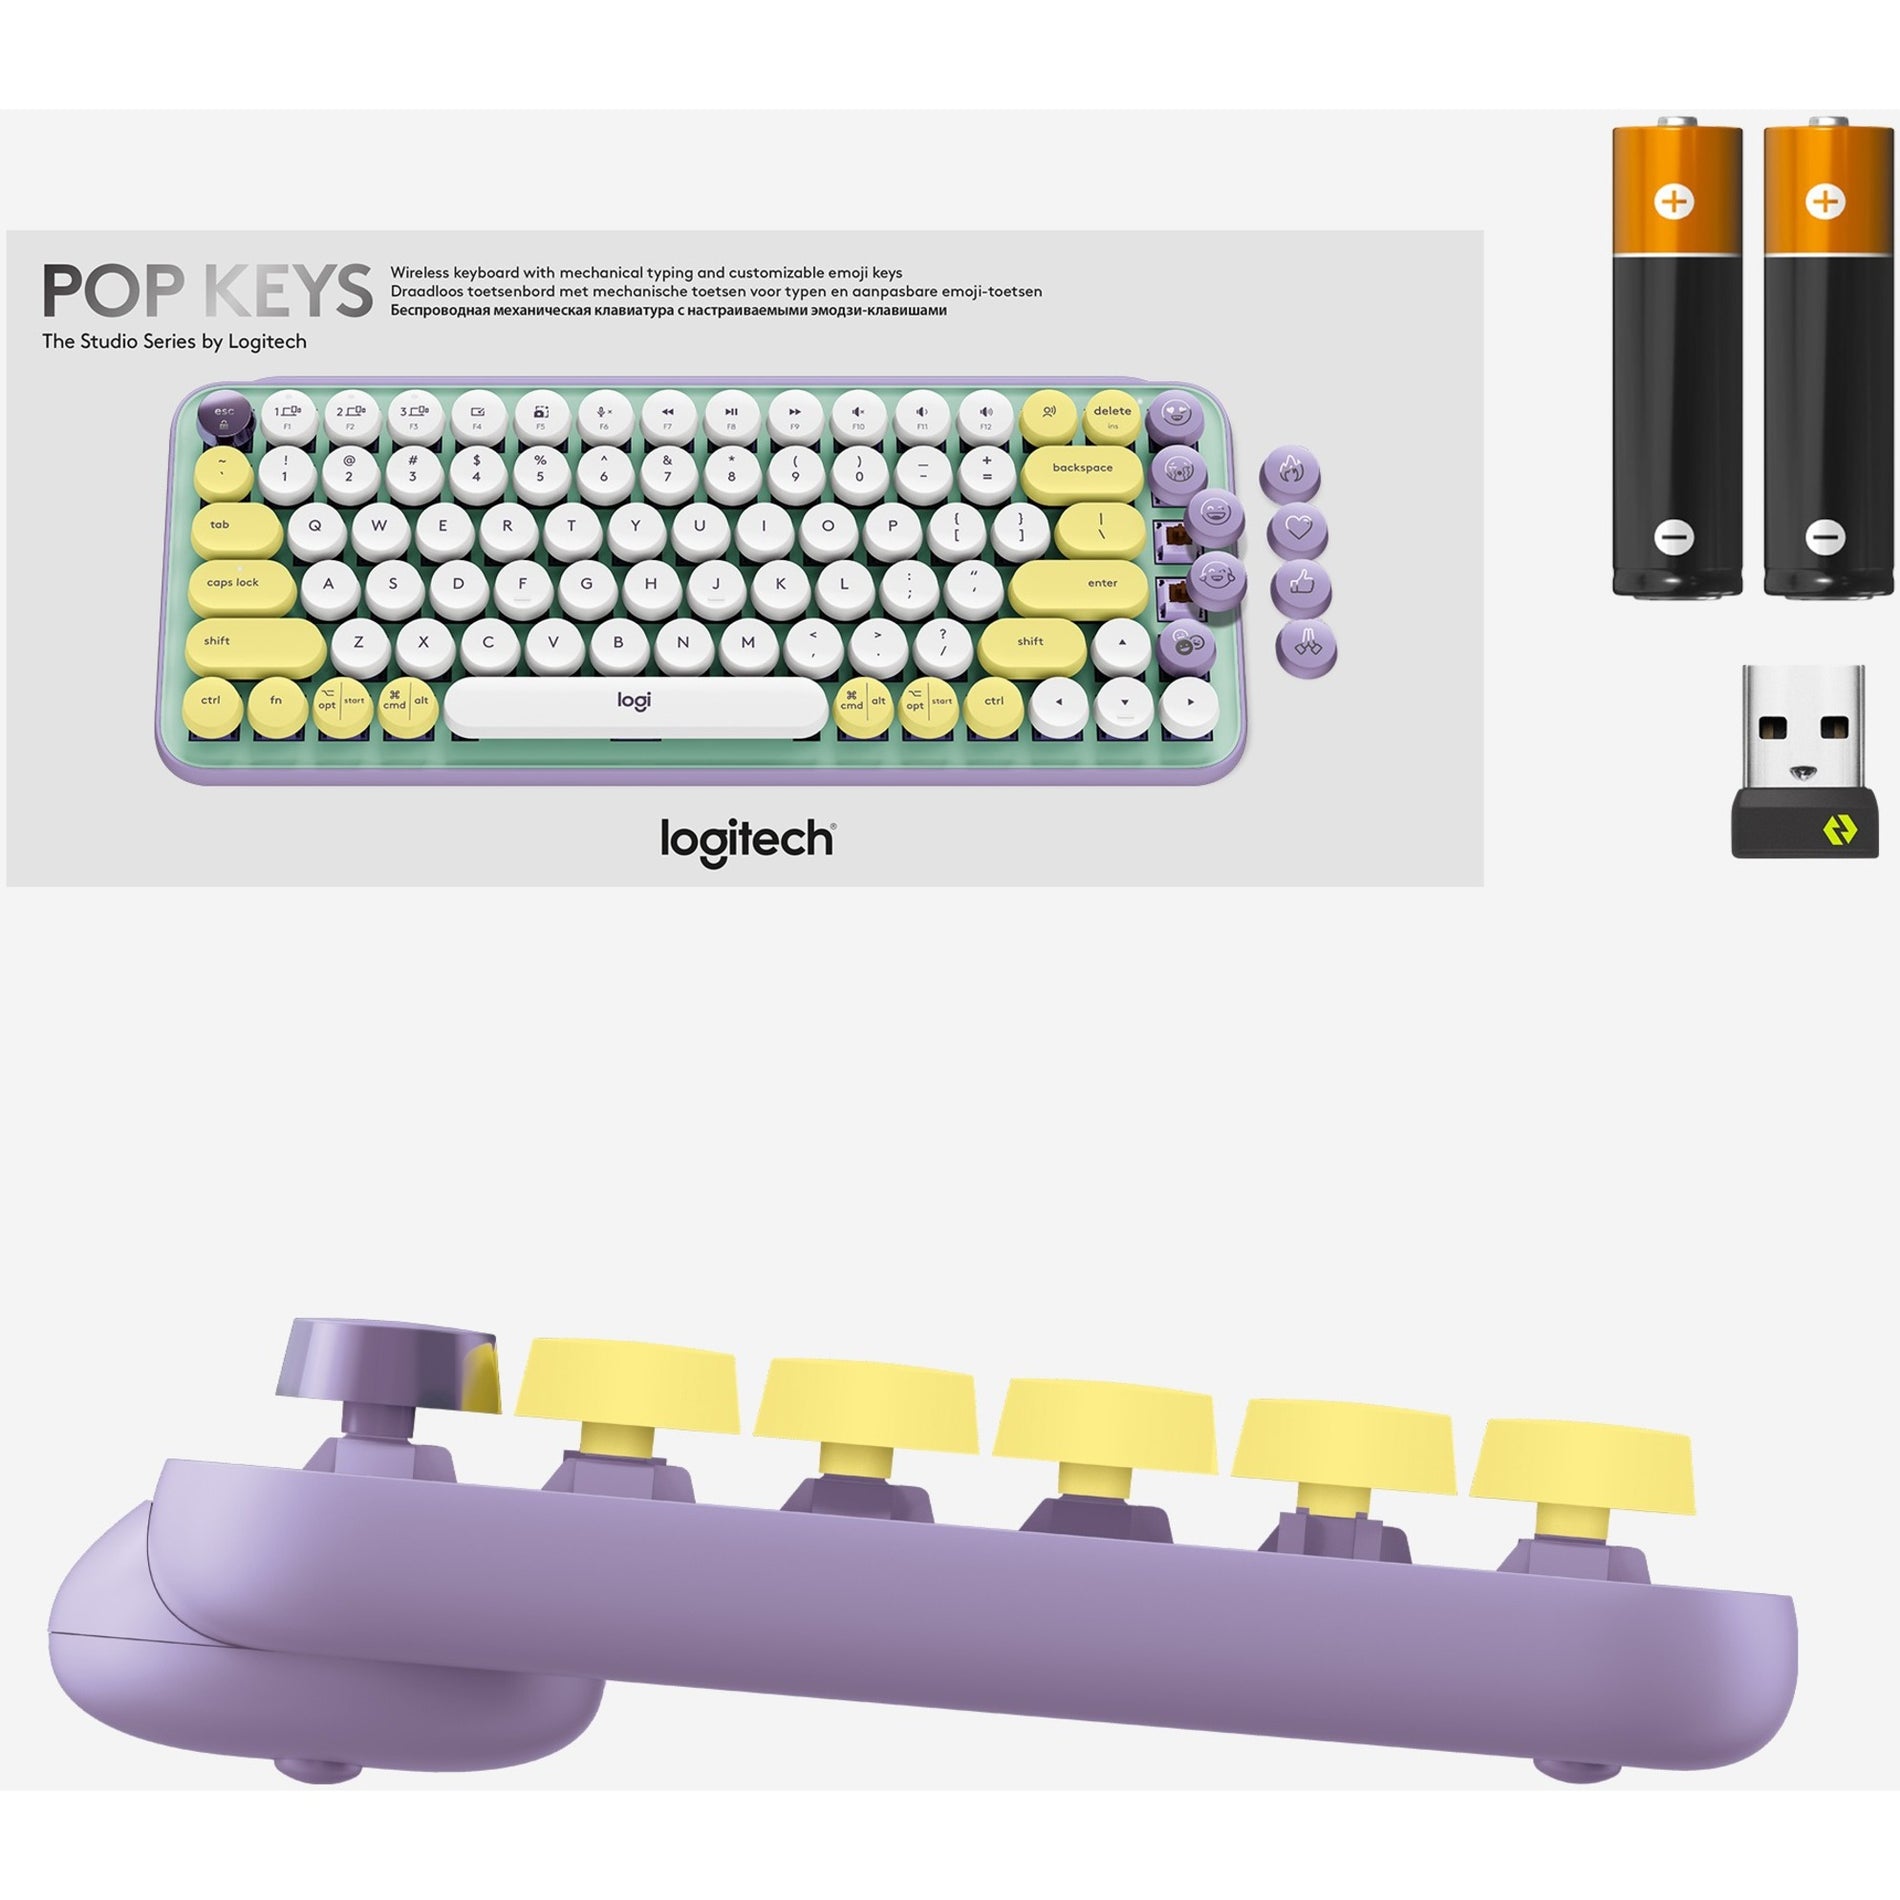 Logitech 920-010708 POP Keys Wireless Mechanical Keyboard With Emoji Keys - Daydream Mint, Express Yourself with Customizable Emoji Keys